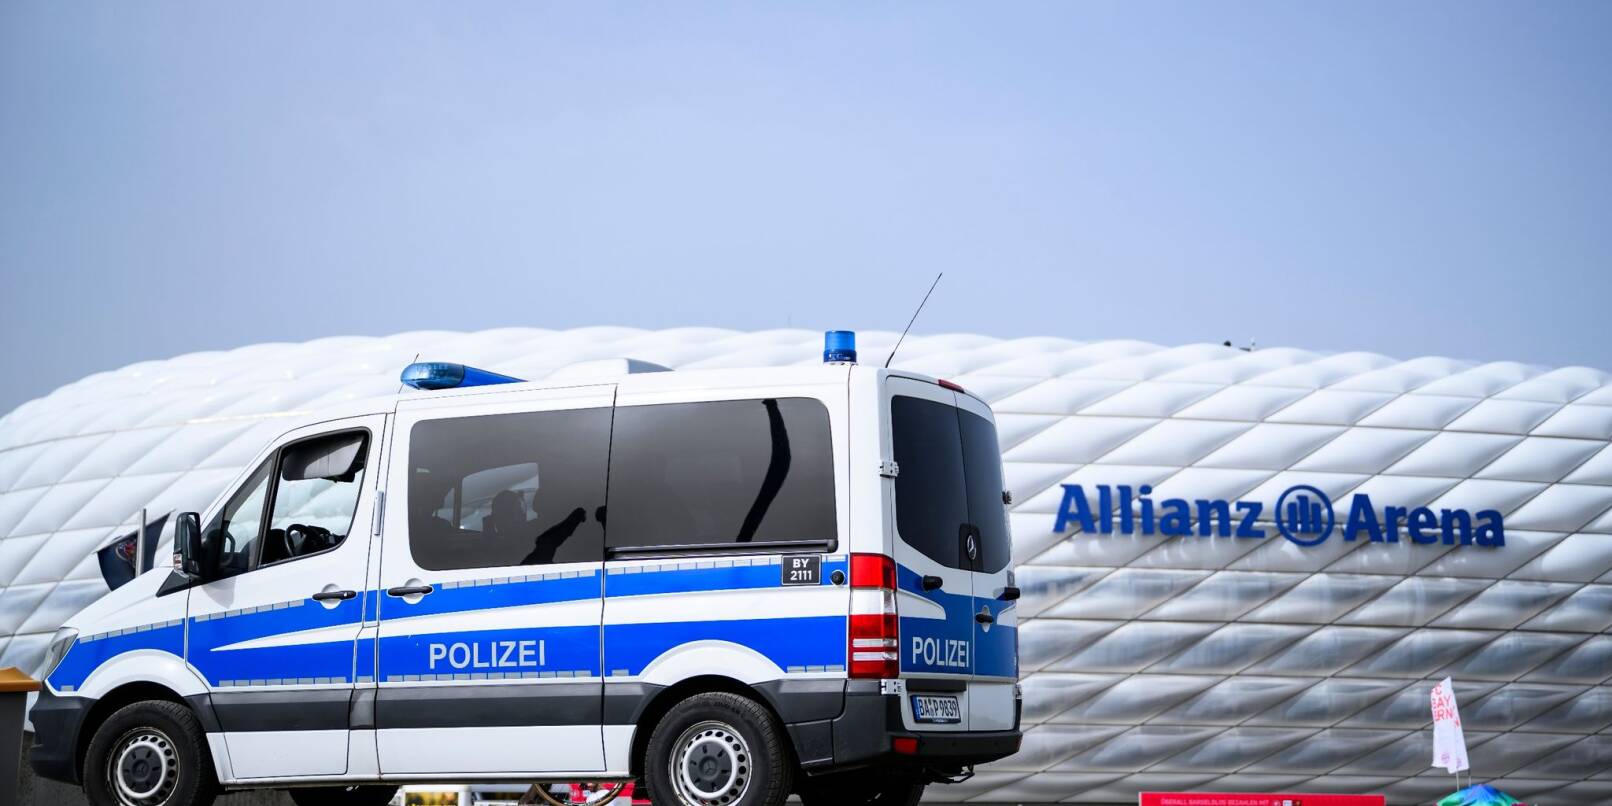 Sicherheit hat für die deutschen Behörden bei der Fußball-EM oberste Priorität.